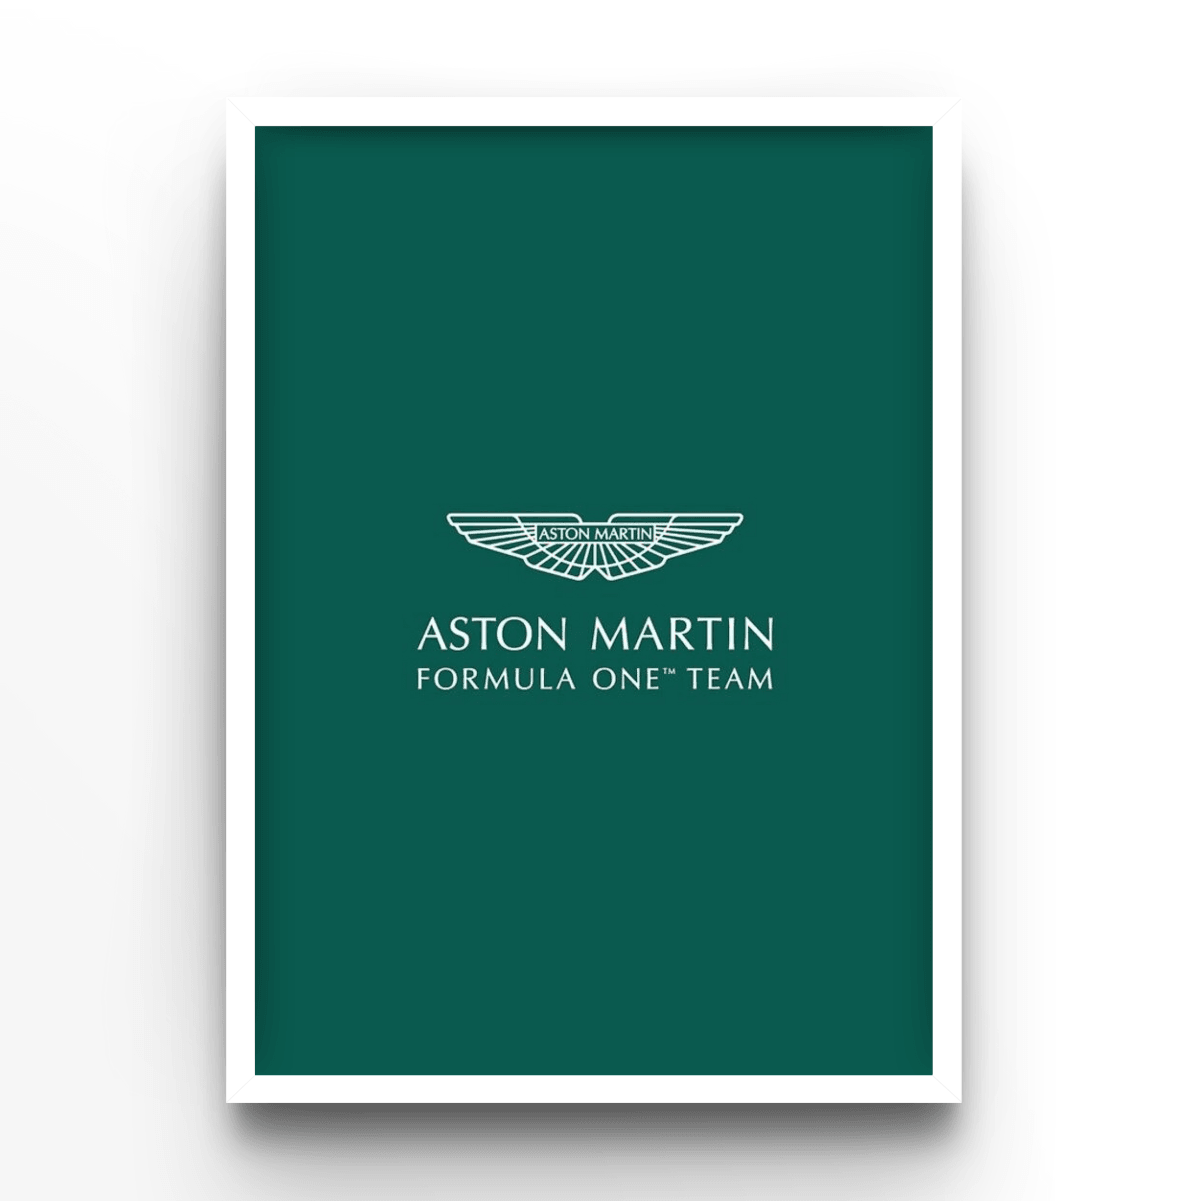 Aston Martin - A4, A3, A2 Posters Base - Poster Print Shop / Art Prints / PostersBase